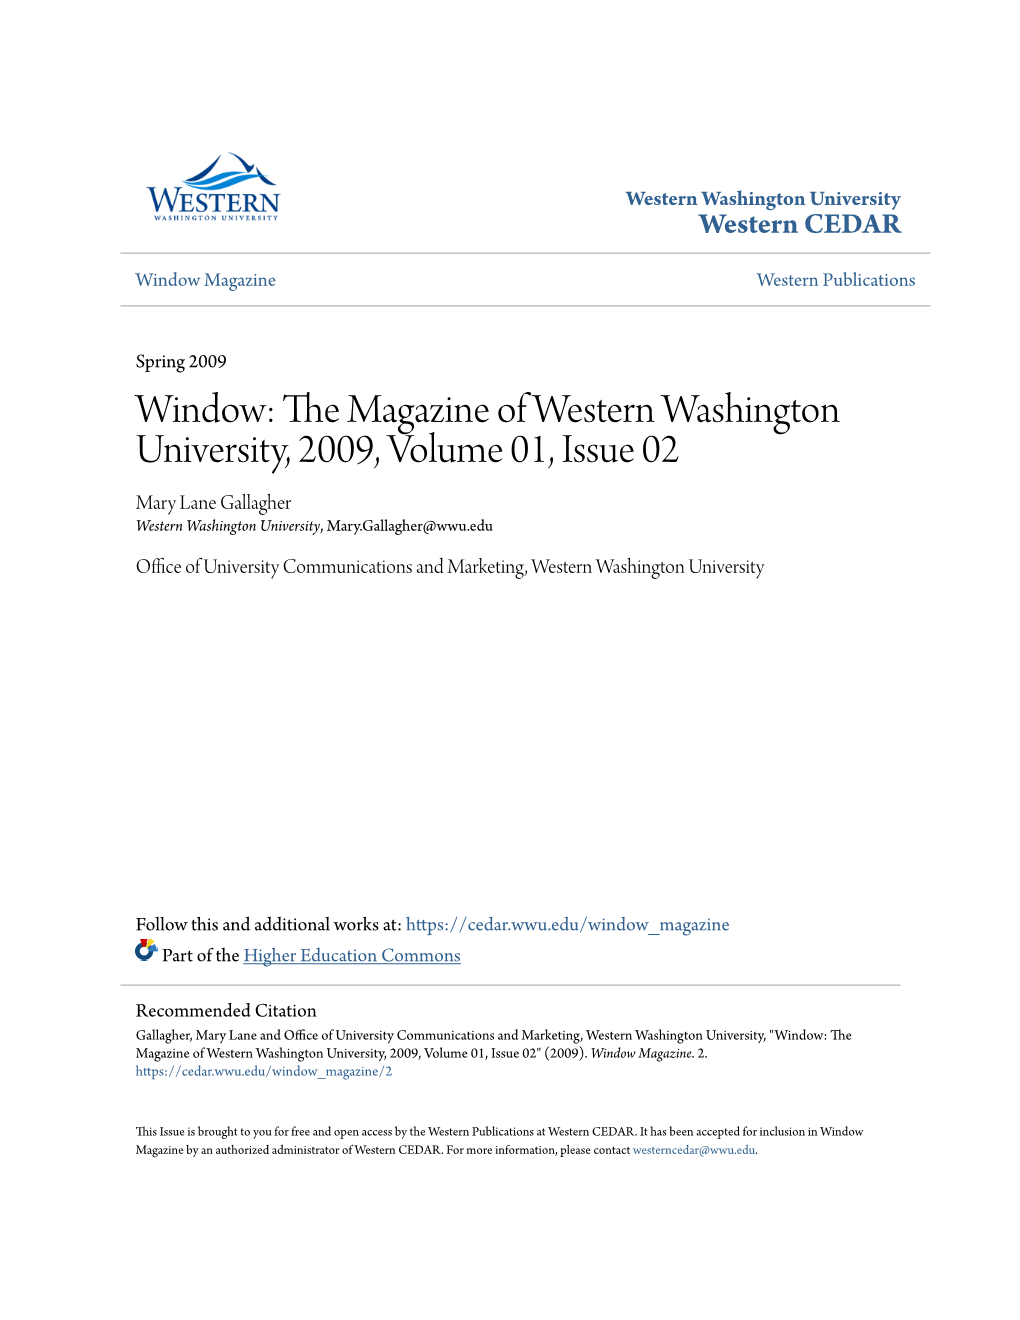 Window: the Magazine of Western Washington University, 2009, Volume 01, Issue 02" (2009)